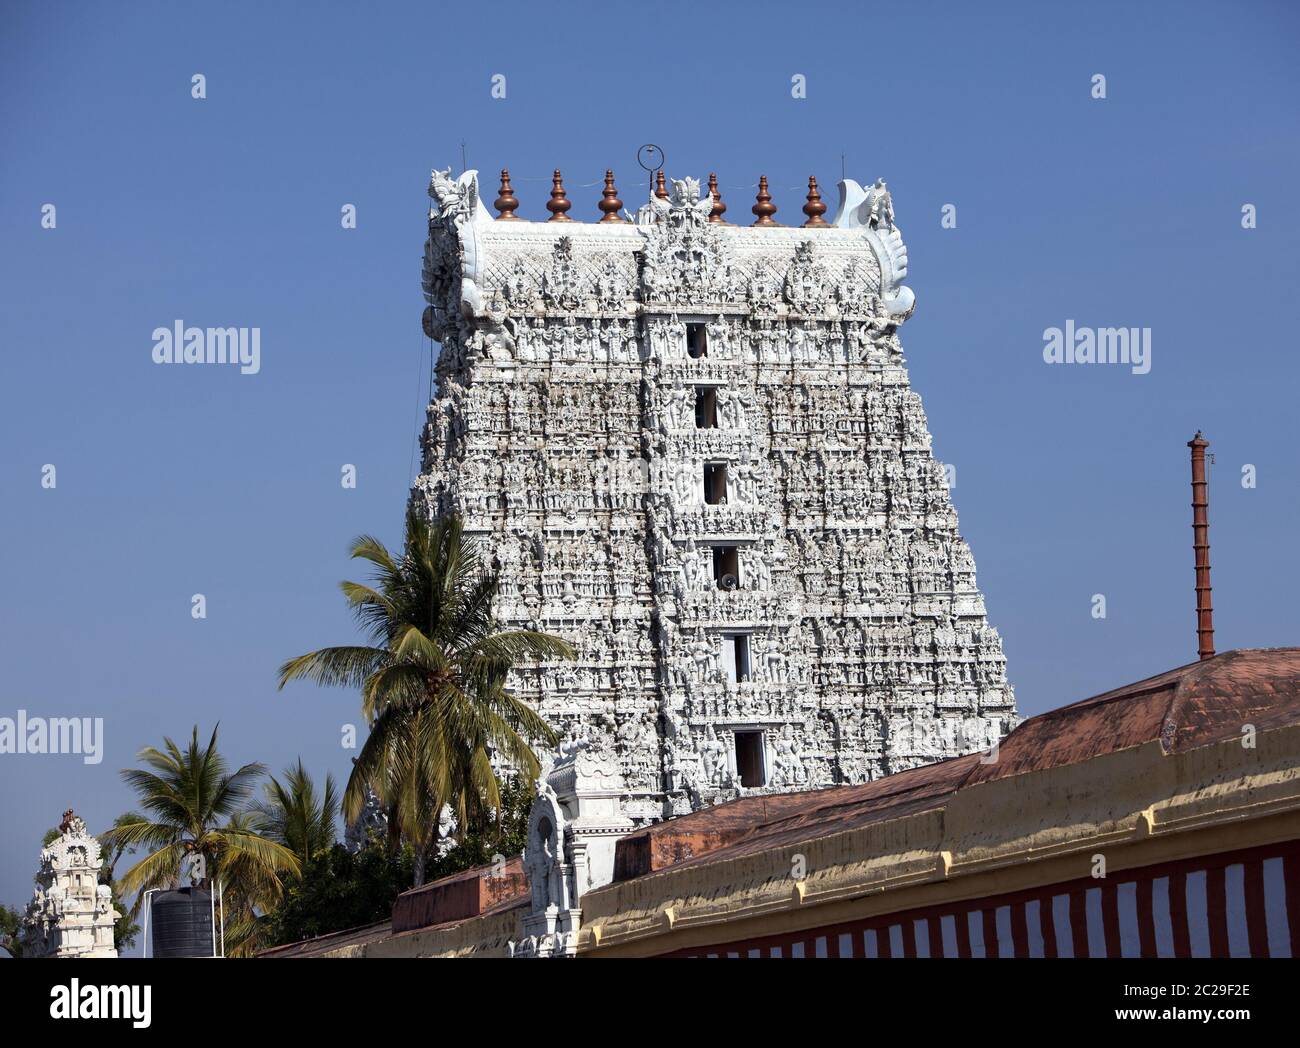 Temple hindou aux couleurs blanches dans le Kanyakumari, Tamil Nadu, Inde Banque D'Images